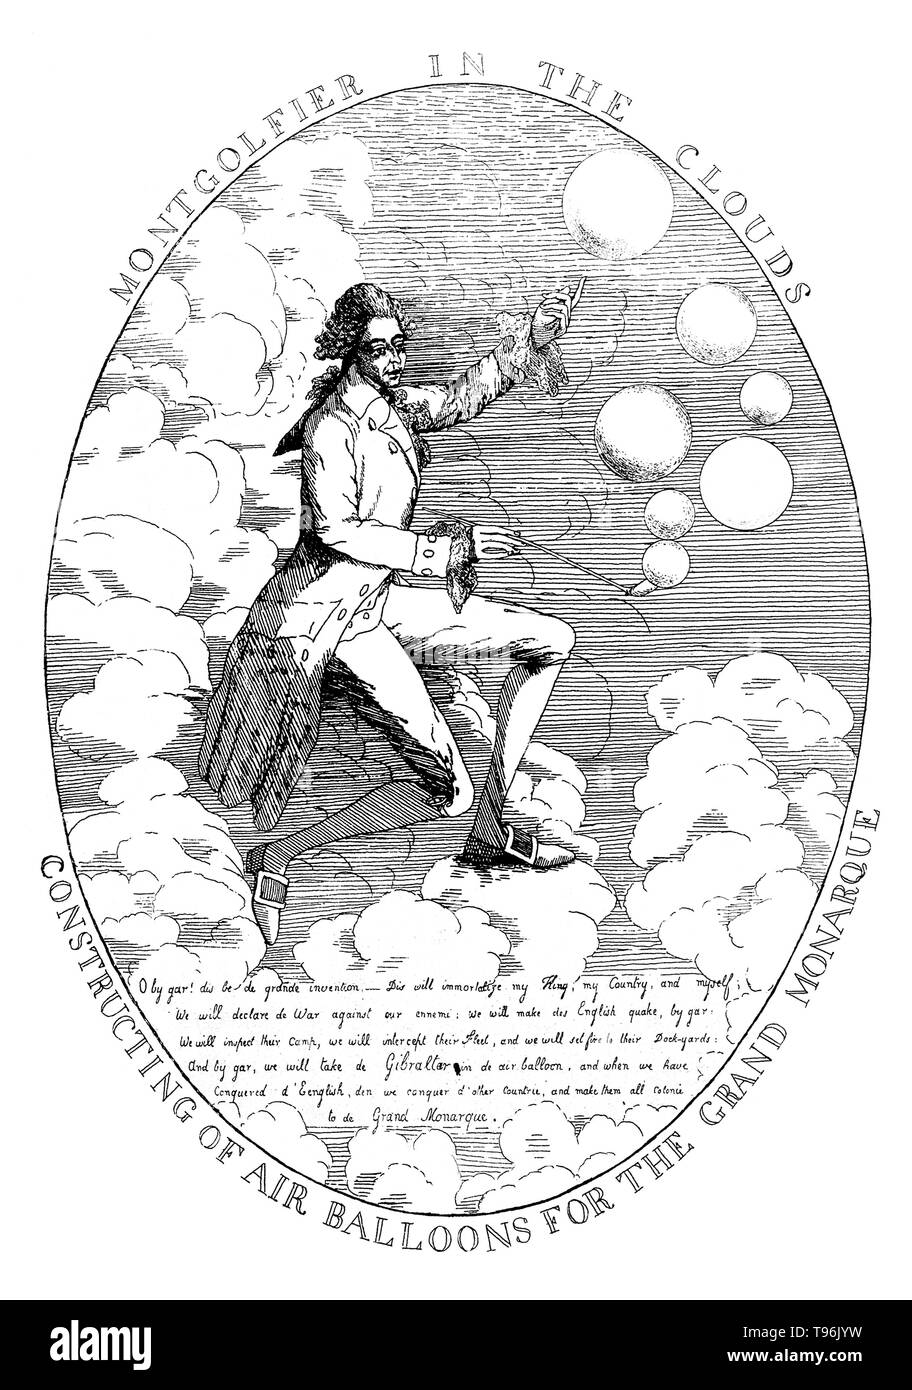 Joseph-Michel Montgolfier (August 26, 1740 - Juni 26, 1810) und Jacques-Étienne Montgolfier (6. Januar 1745 - August 2, 1799) wurden die Erfinder der Montgolfière Stil Heißluftballon, Globus aérostatique. Am 4. Juni 1783, flogen sie ihr Handwerk vor einer Gruppe von Würdenträgern. Seinen Flug abgedeckt 1.2 Meilen, dauerte 10 Minuten und hatte eine geschätzte Höhe von 5,200-6 ,600 ft. Die Brüder ist es gelungen, die Einleitung der ersten bemannten Aufstieg, wenn étienne die Modemfunktion Flug am 15. Oktober 1783 vorgenommen. Stockfoto